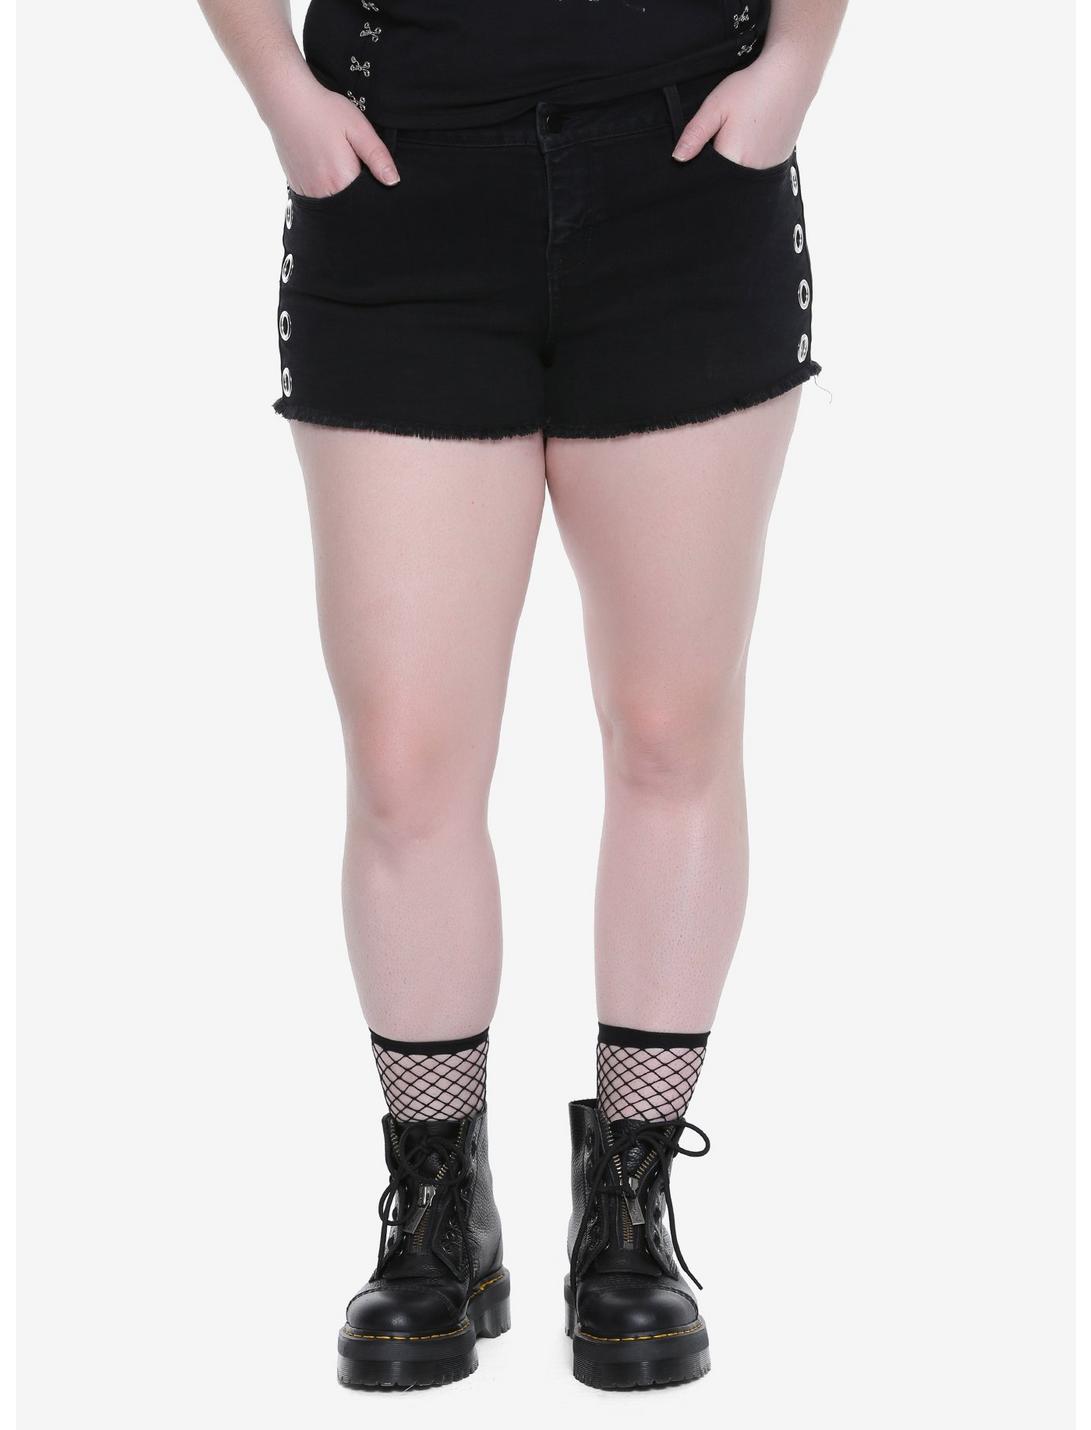 Blackheart Grommet Raw Hem Shorts Plus Size, BLACK, hi-res